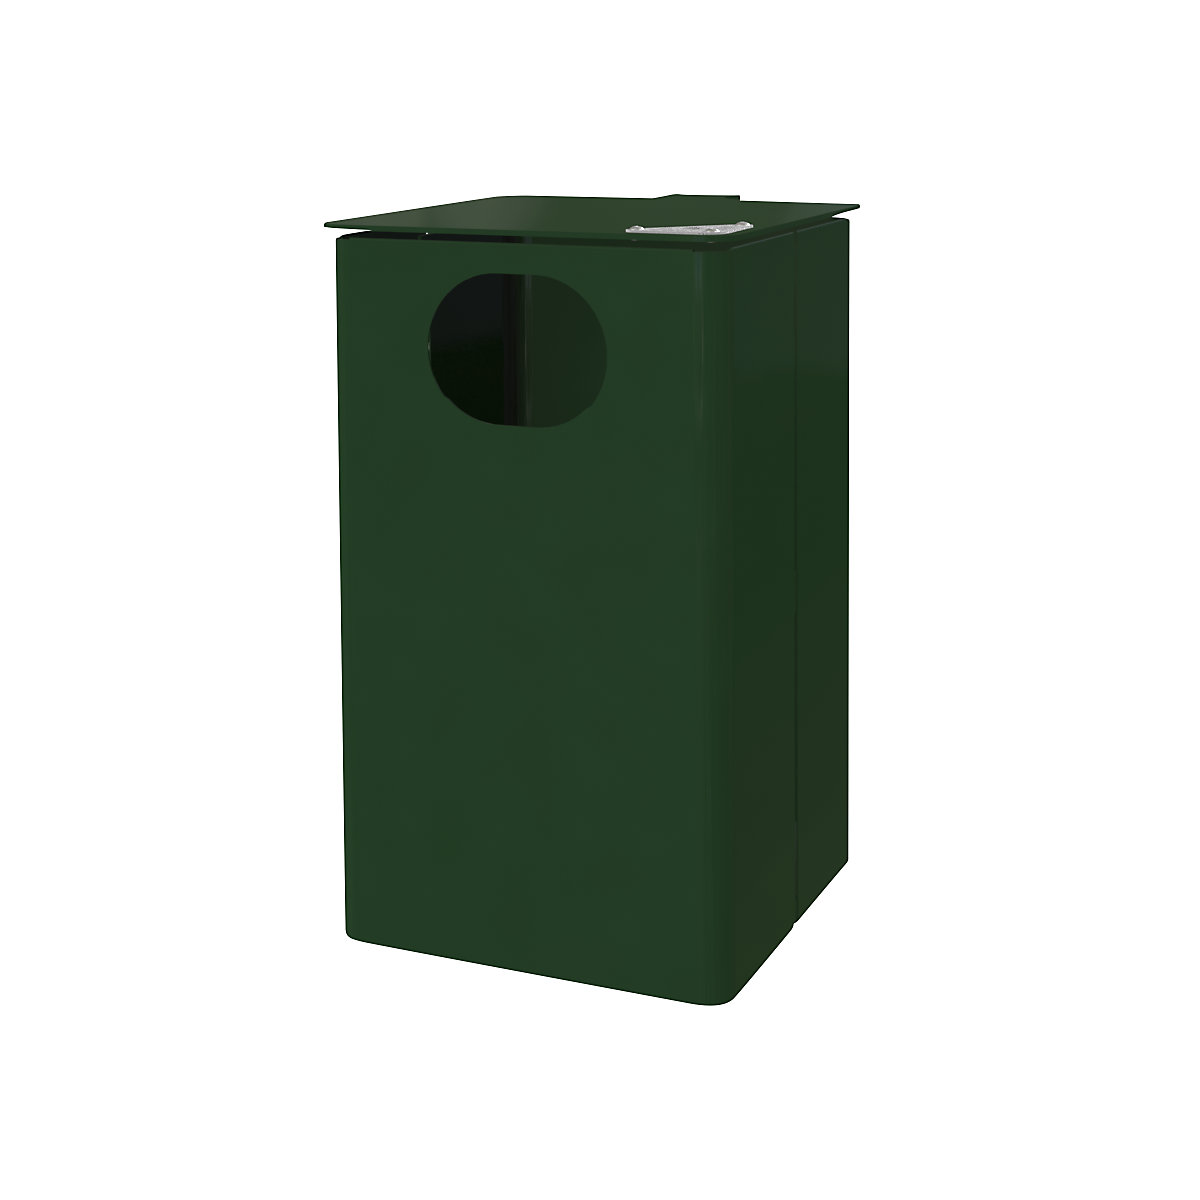 Venkovní nádoba na odpad s popelníkem, objem 35 l, v x š x h 537 x 325 x 388 mm, mechová zelená-8